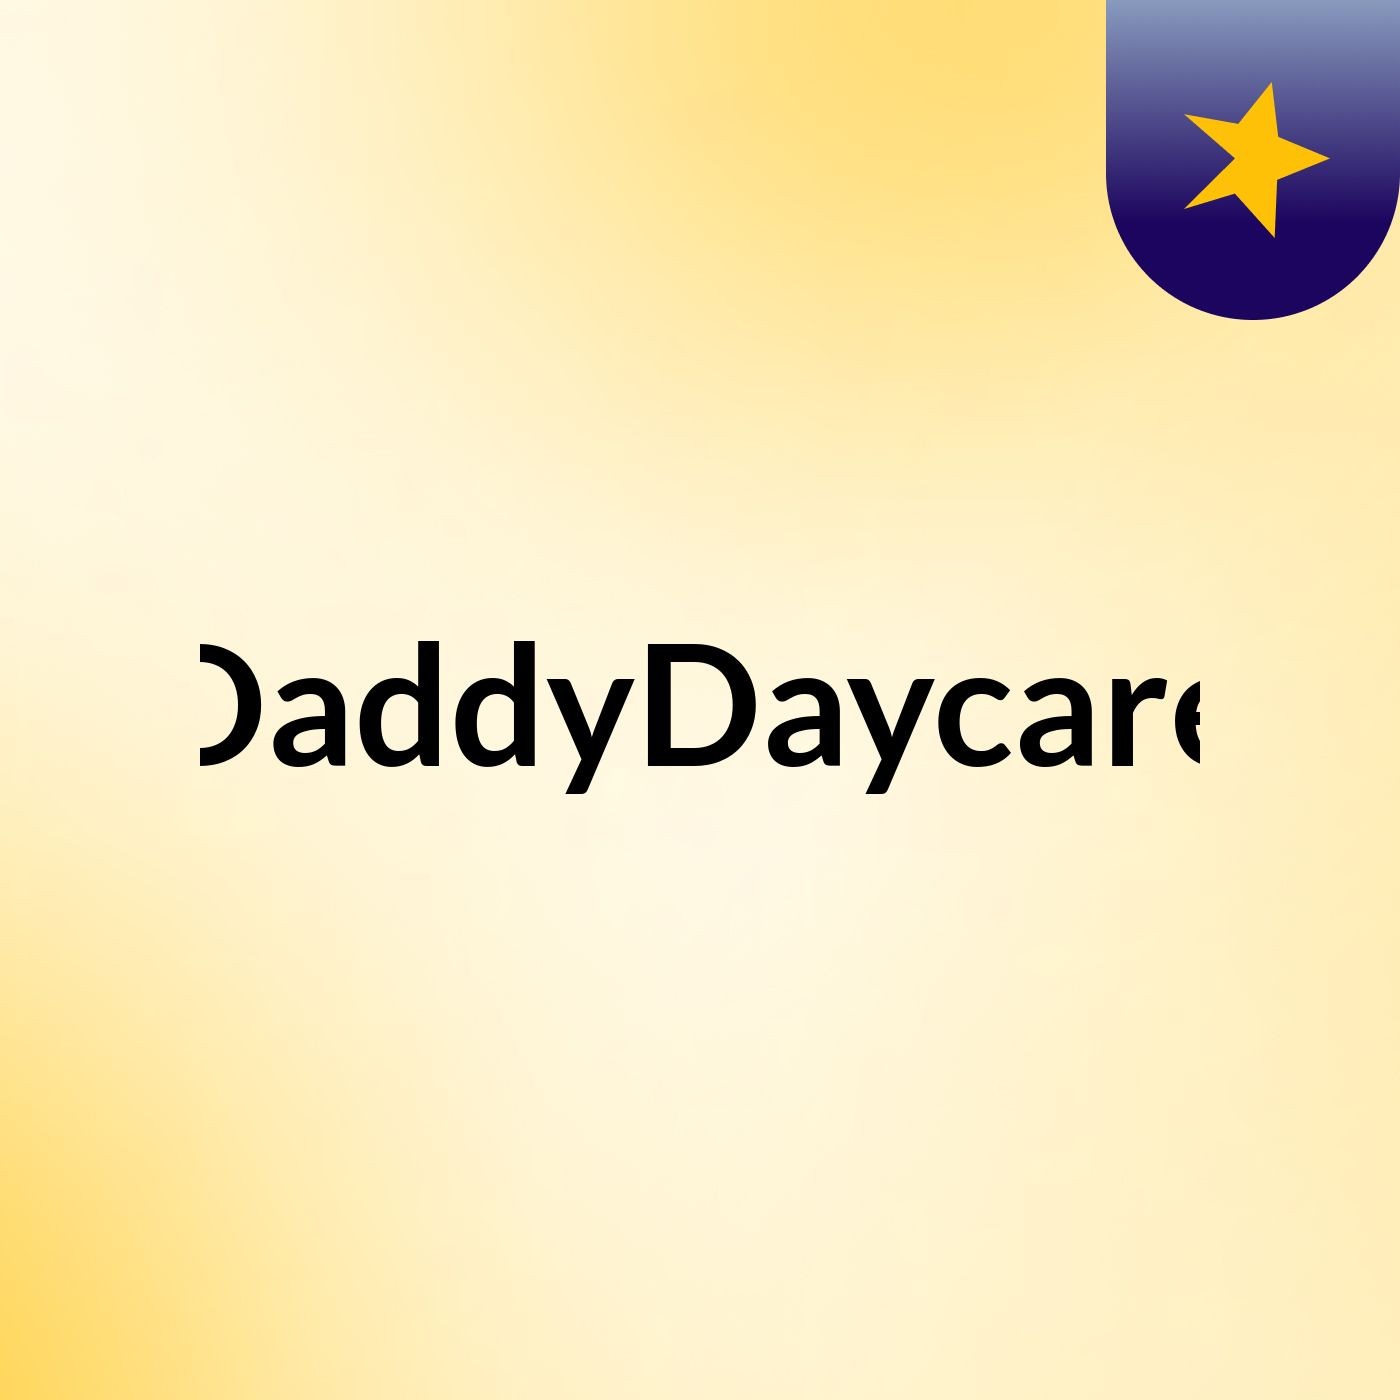 DaddyDaycare